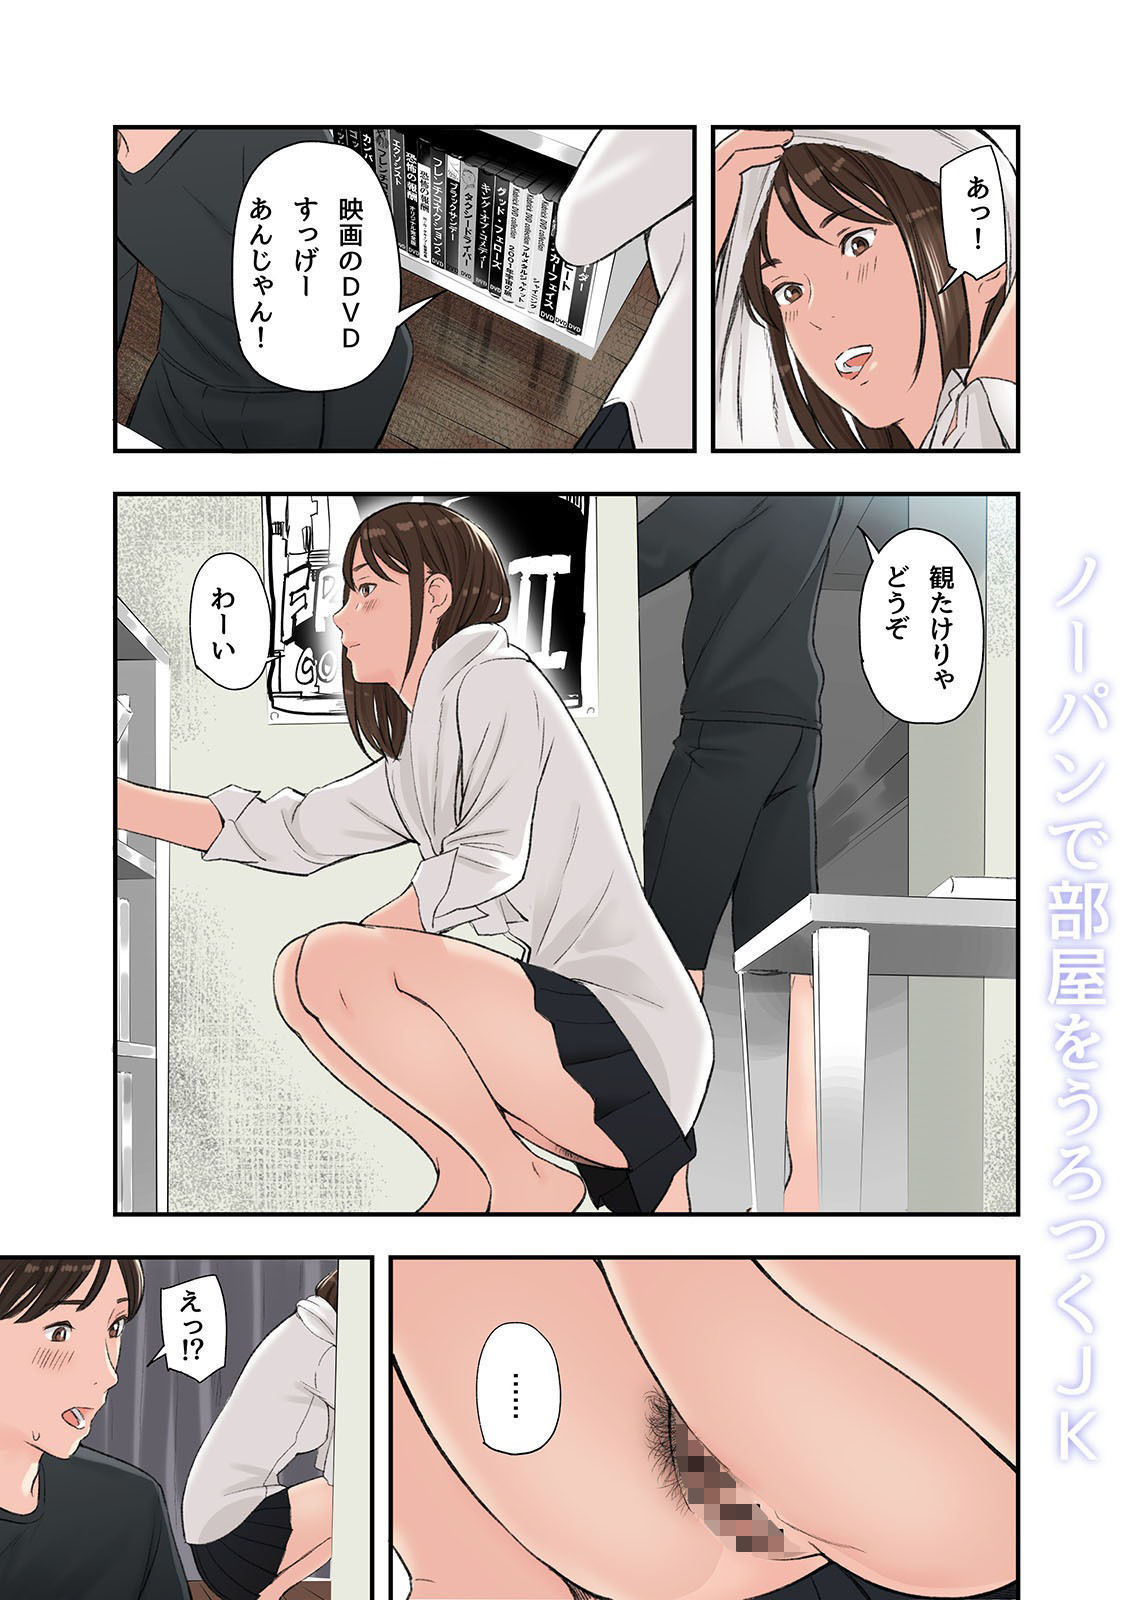 【エロ漫画無料大全集】【エロ漫画JK】ローカル列車で出会った制服女子にパンツ見せられ煽られて…